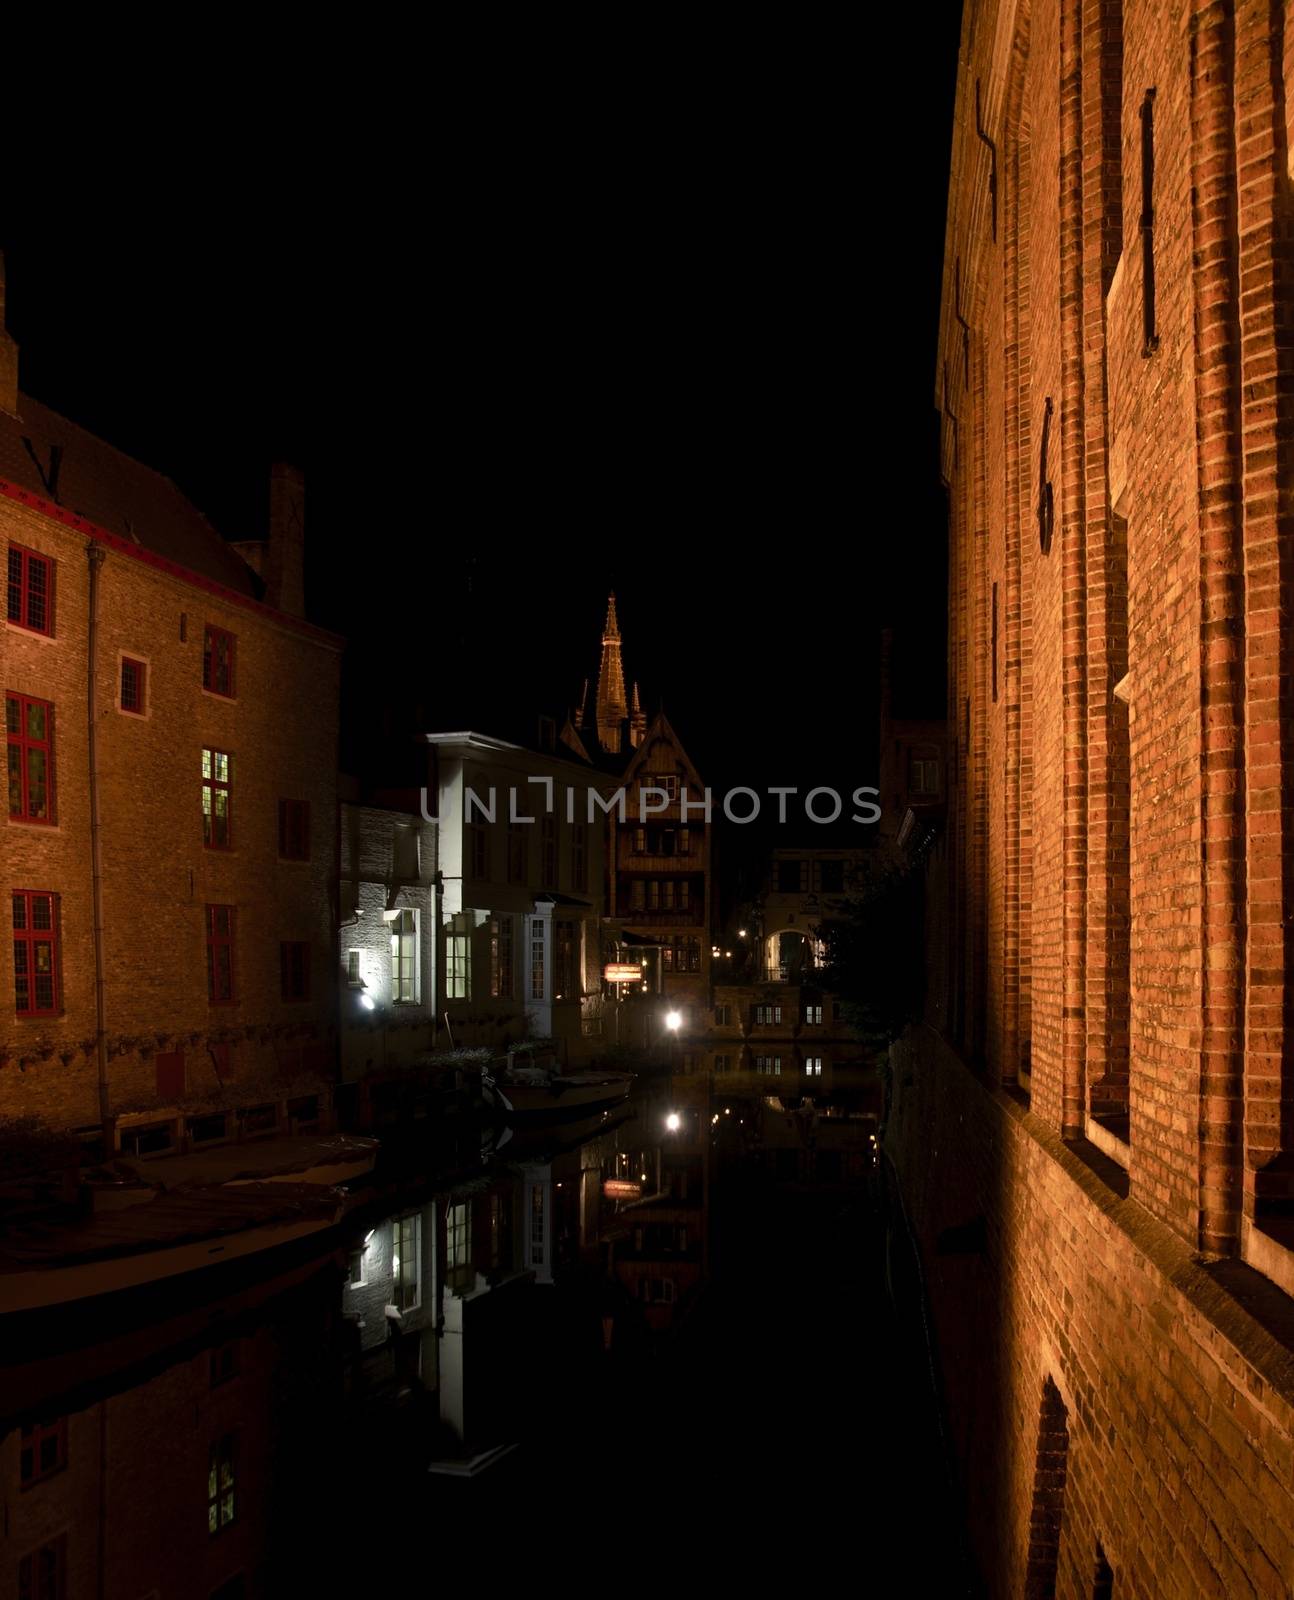 Travel in Brugge by javax